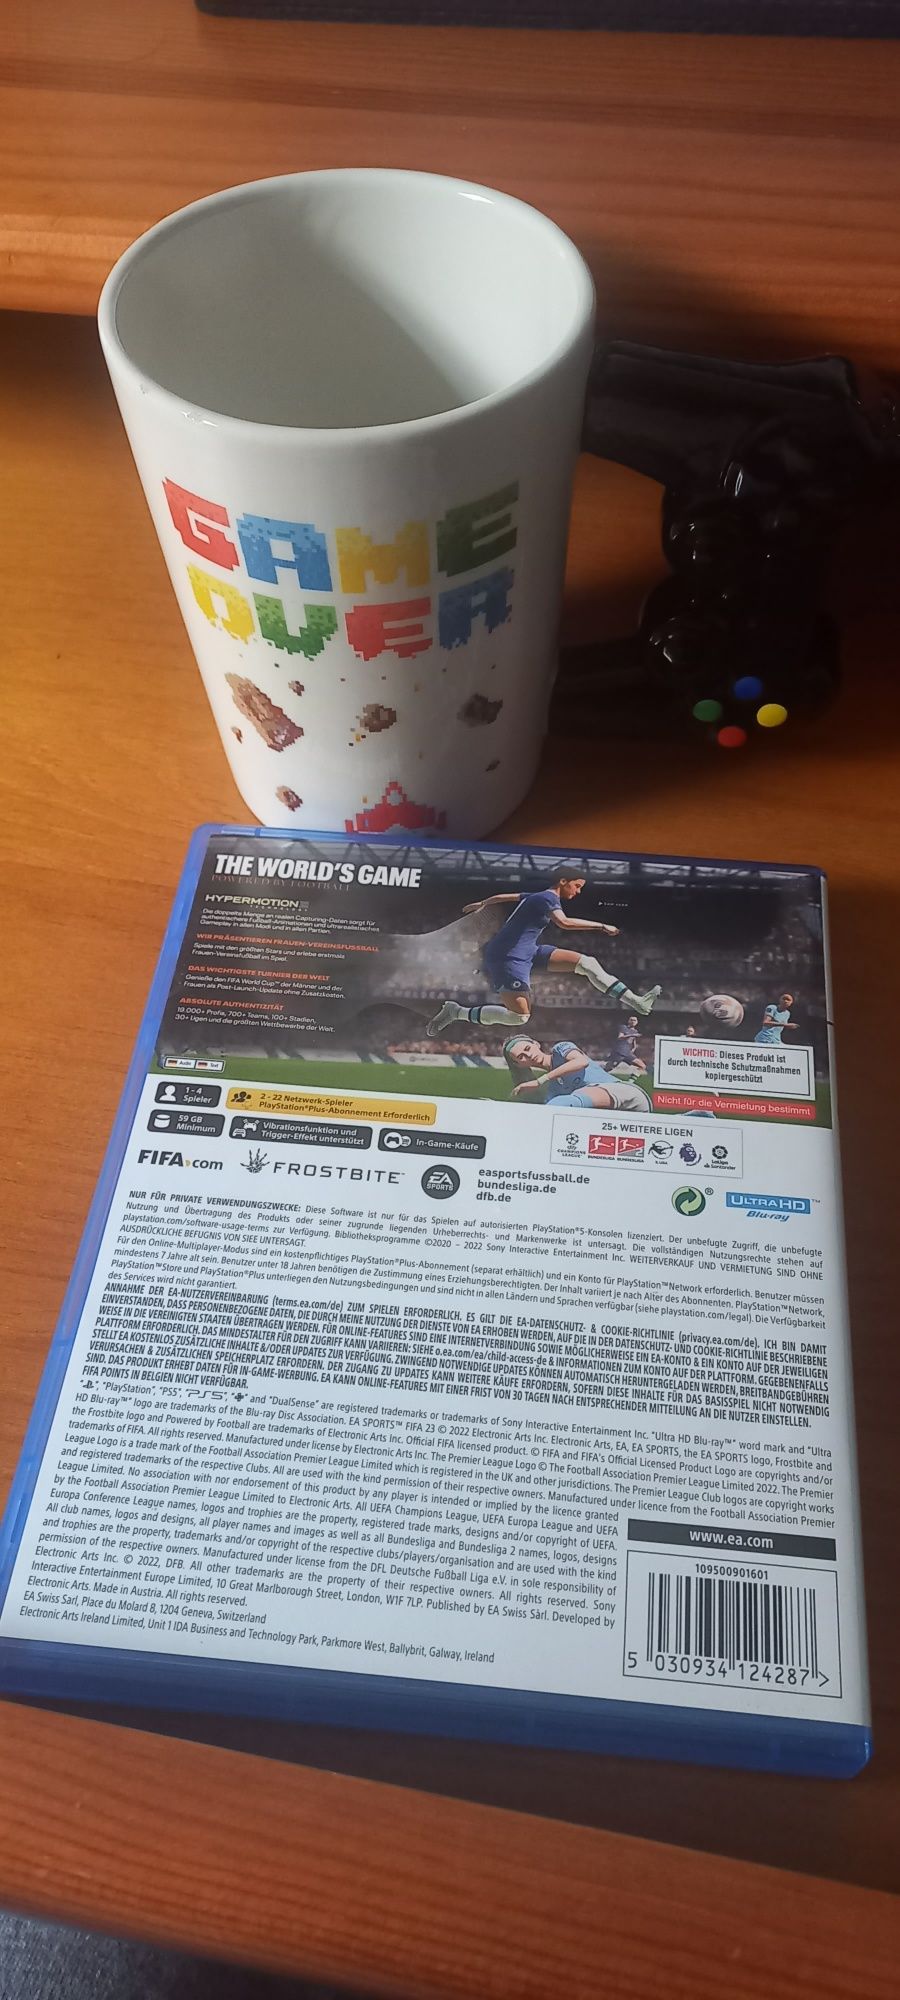 FIFA 23 para PS5